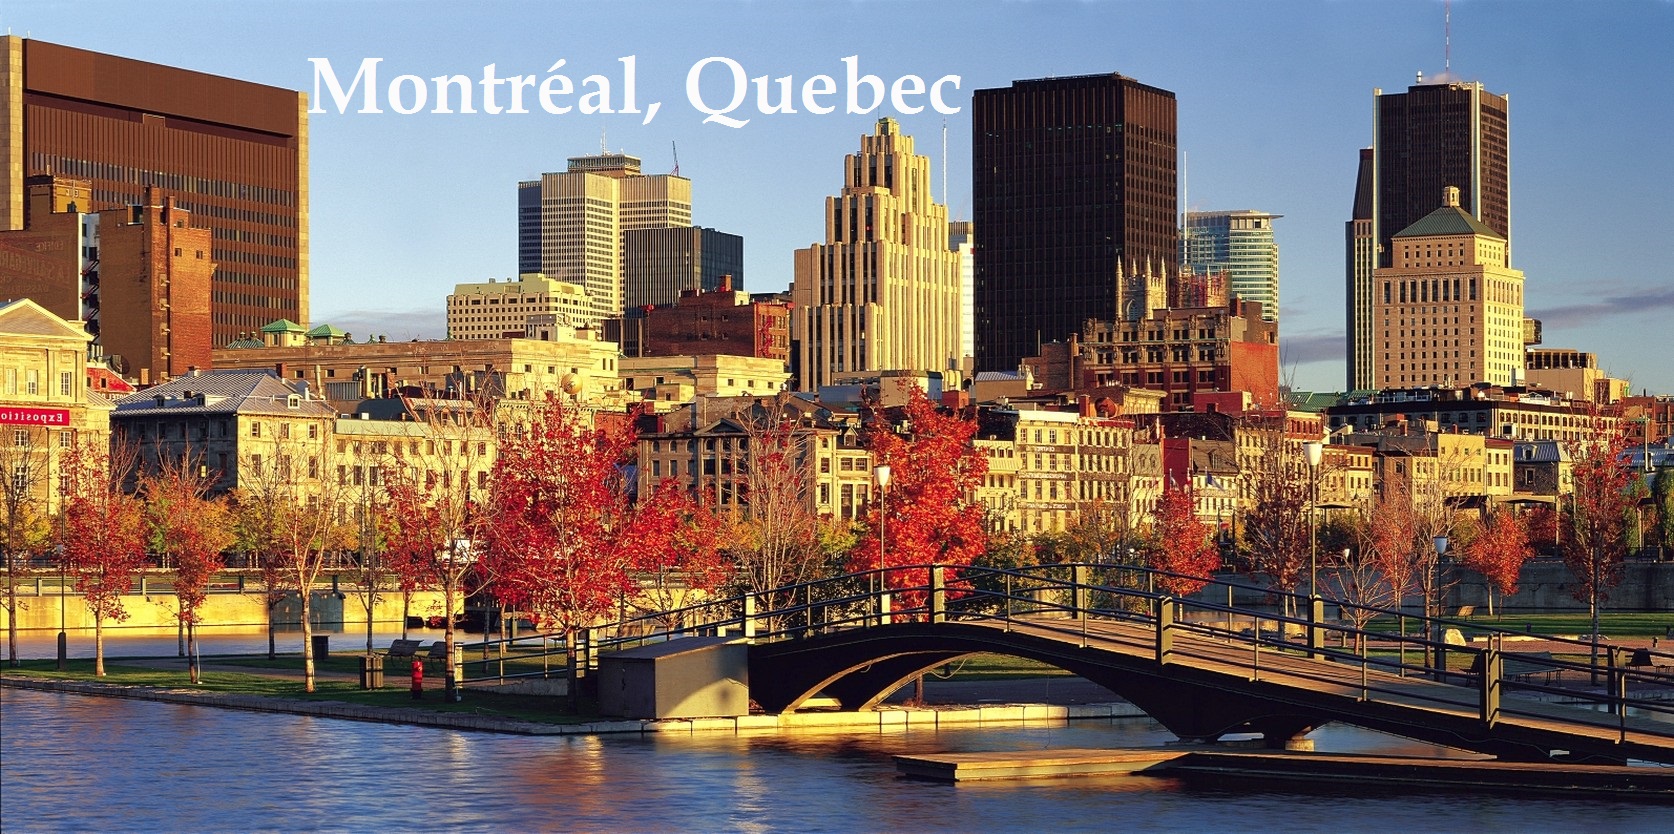 Tiến trình hồ sơ đầu tư định cư Quebec thường trải qua 6 bước: